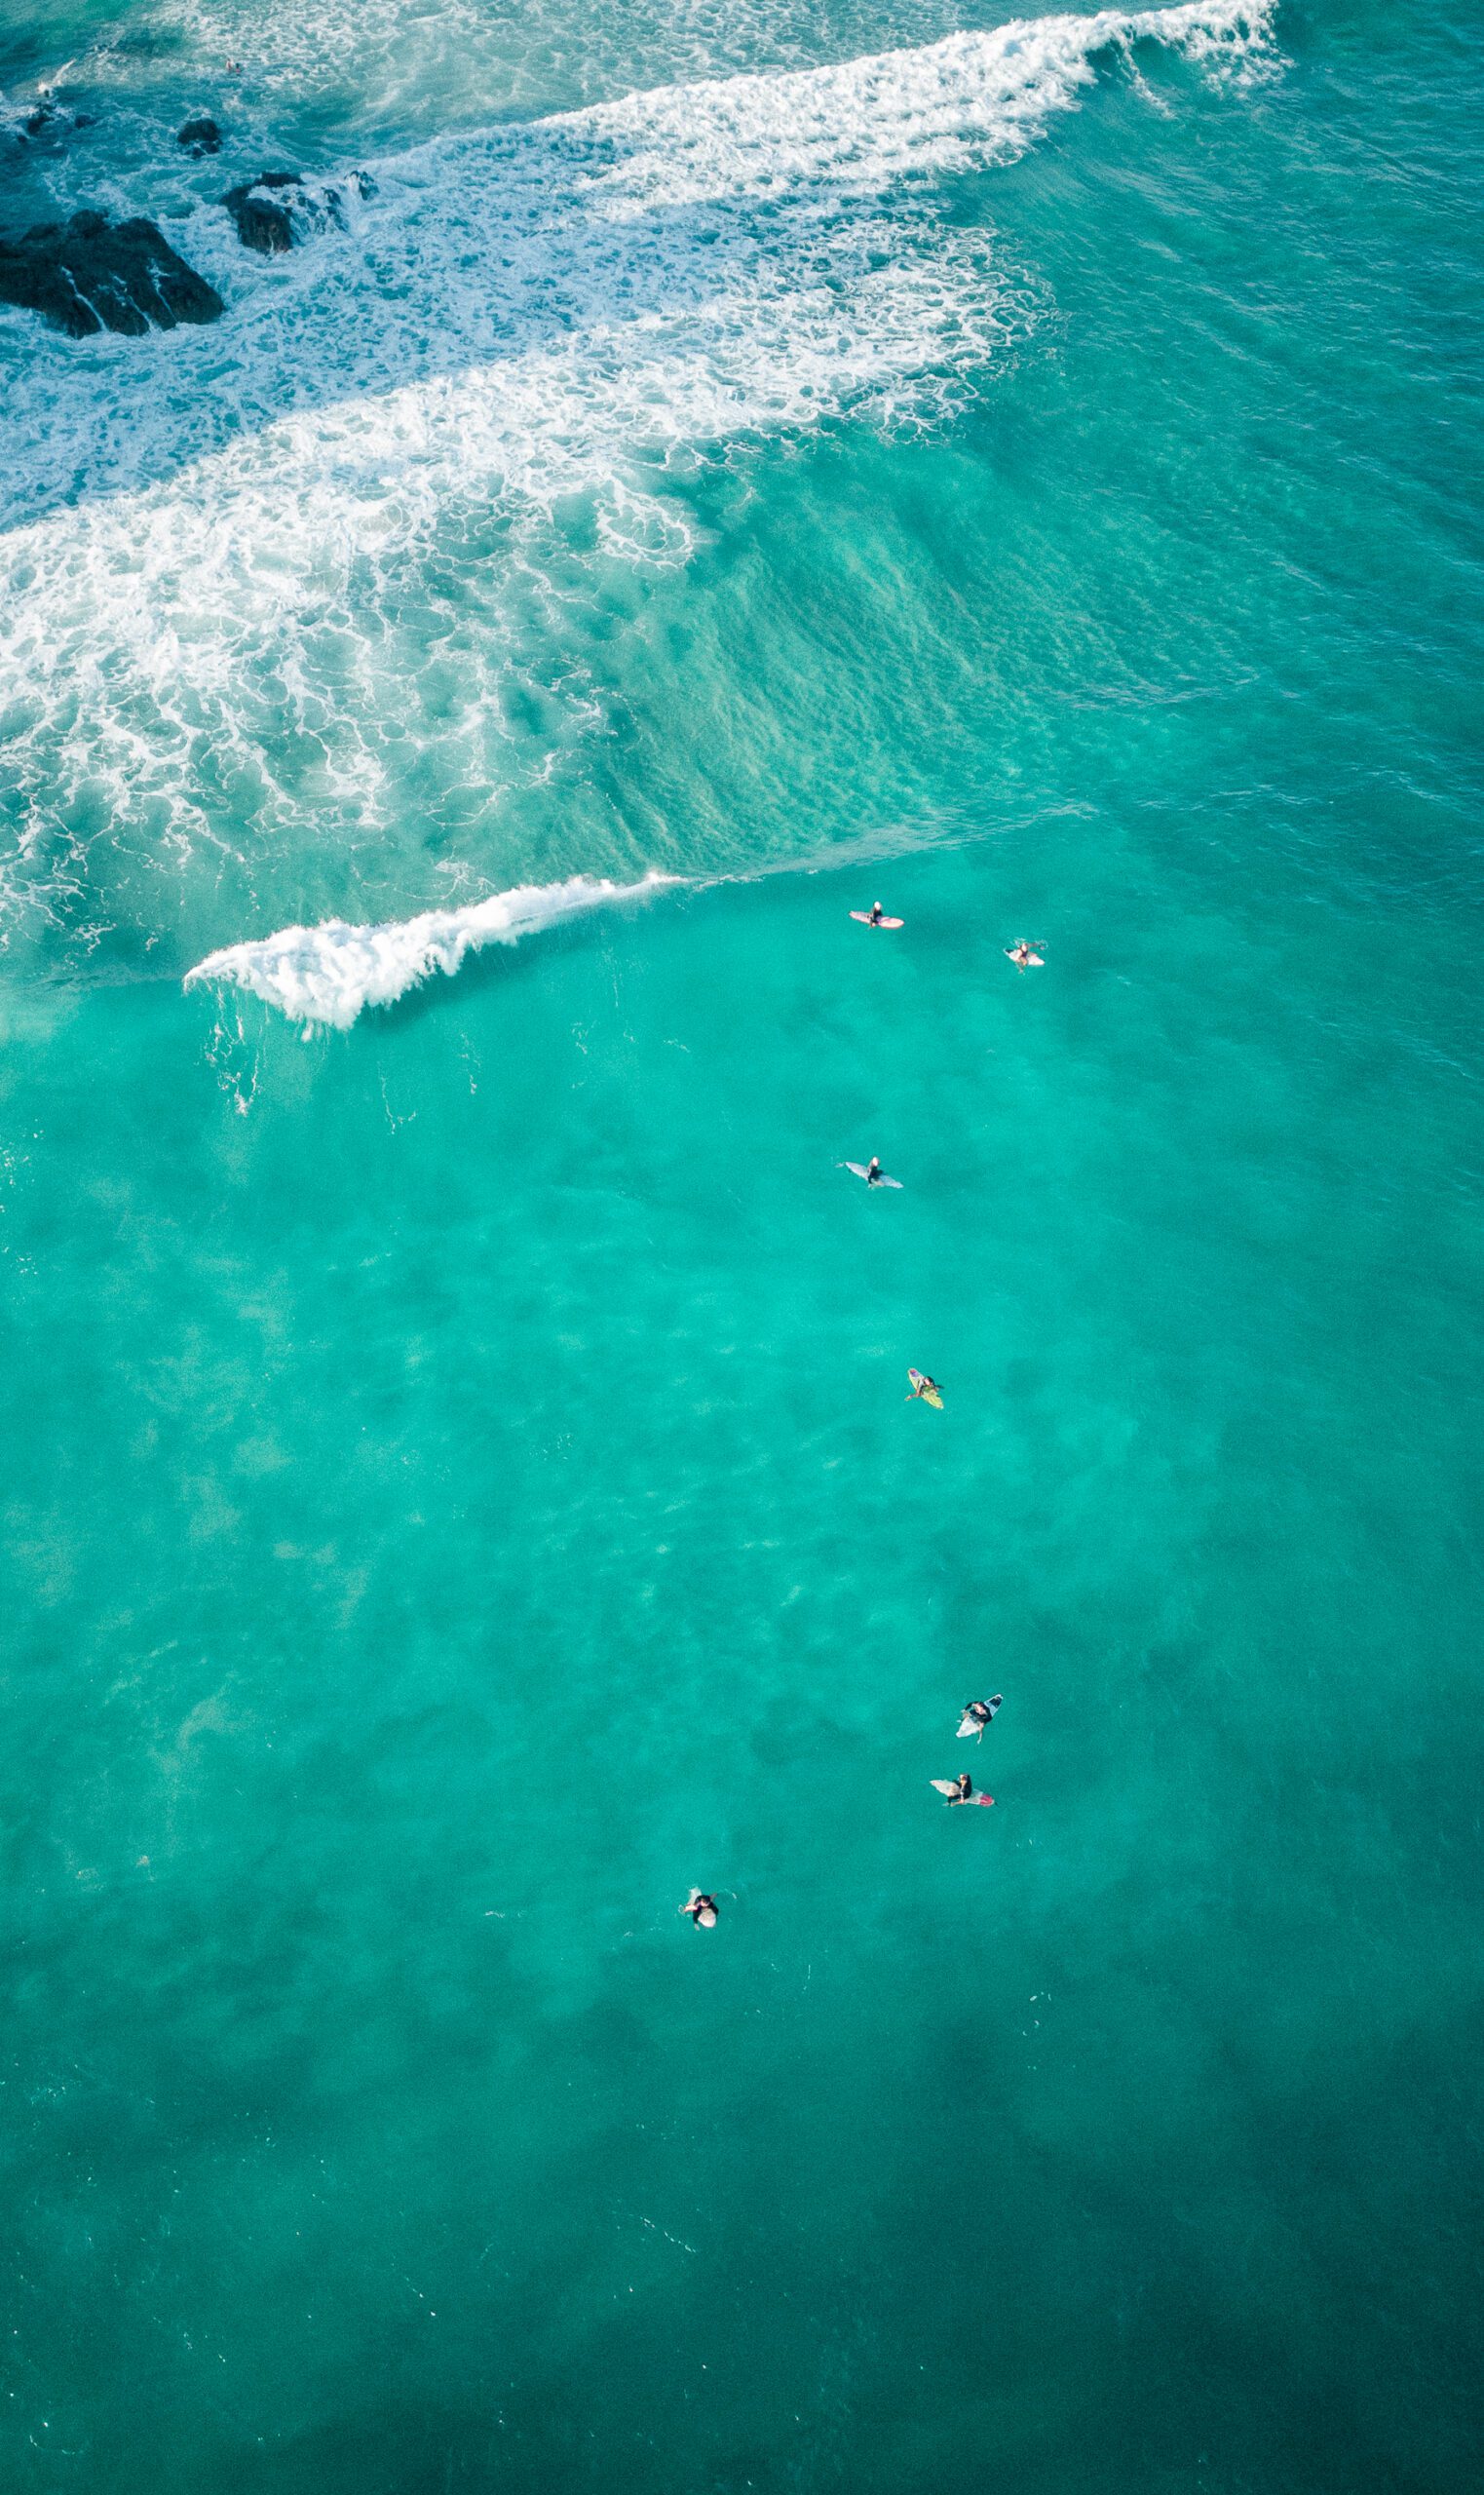 Nous récupérons des combinaisons usagées de surfeurs pour leur donner une seconde vie et ainsi créer nos lunettes de soleil et accessoires à base d'upcycling en néoprène.